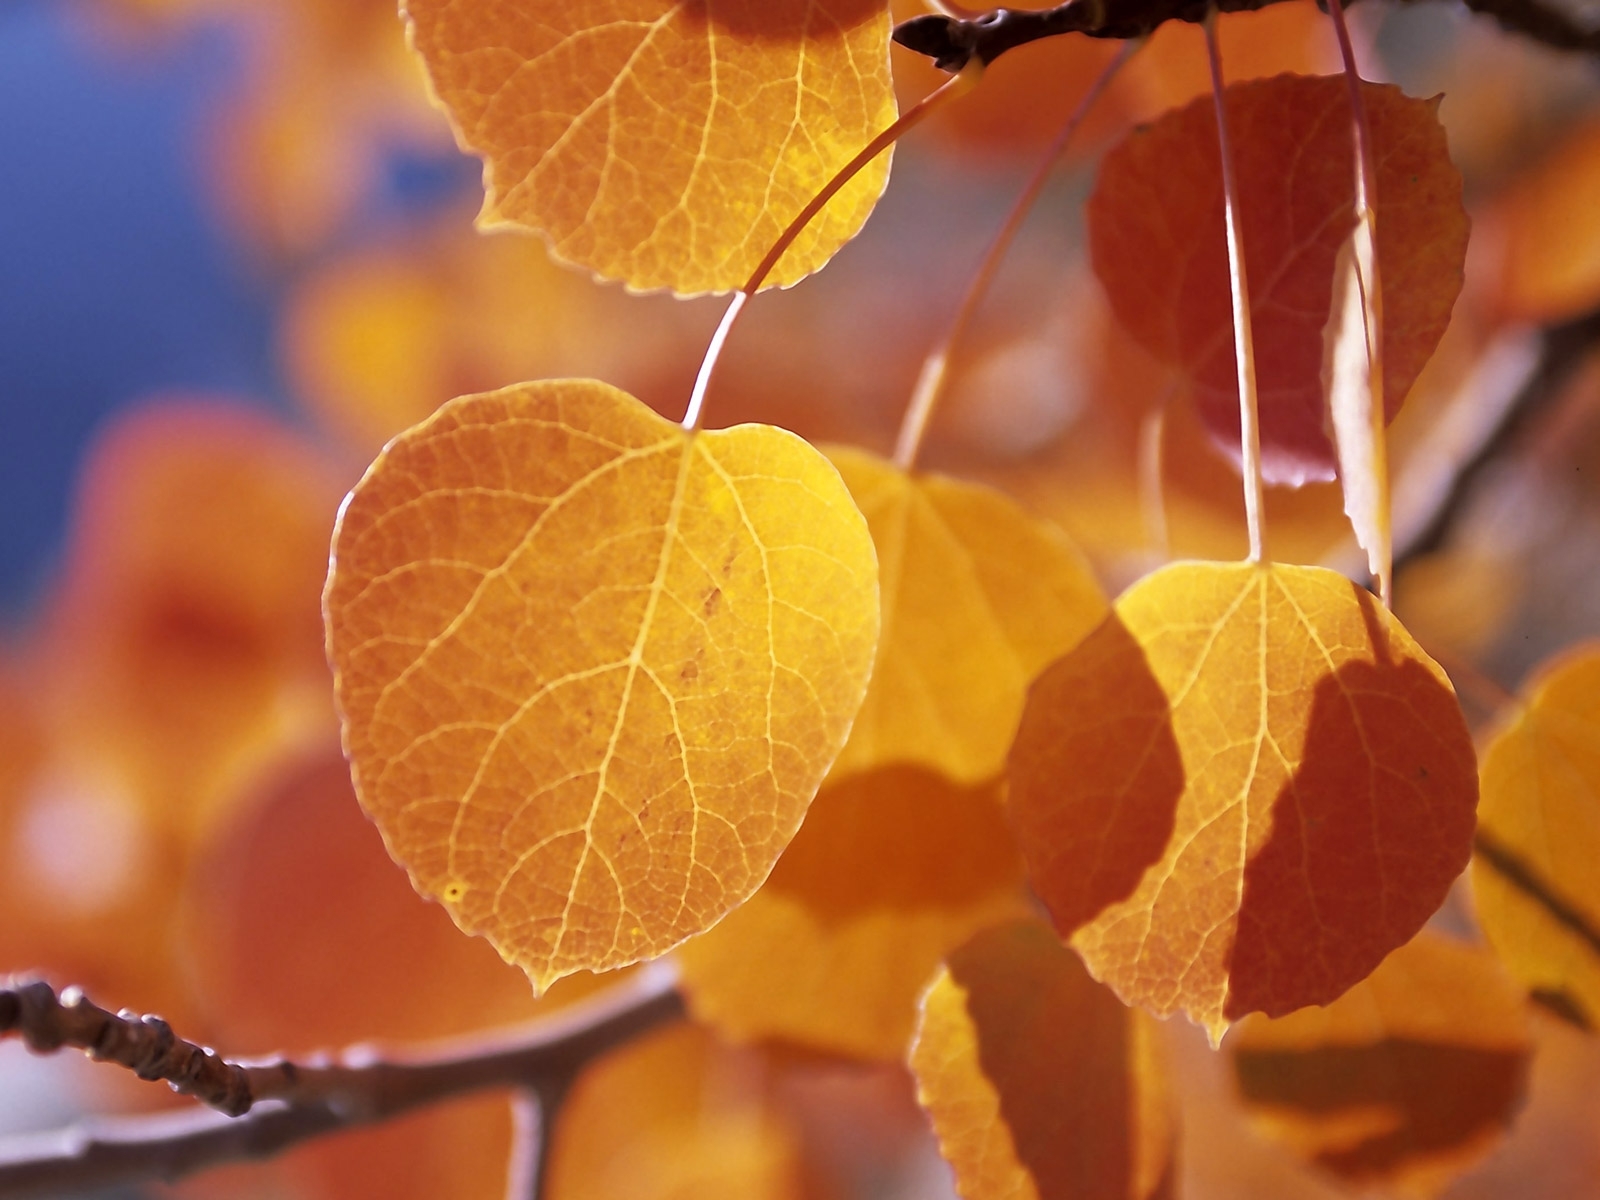 Скачать обои бесплатно Деревья, Листья, Растения, Осень картинка на рабочий стол ПК